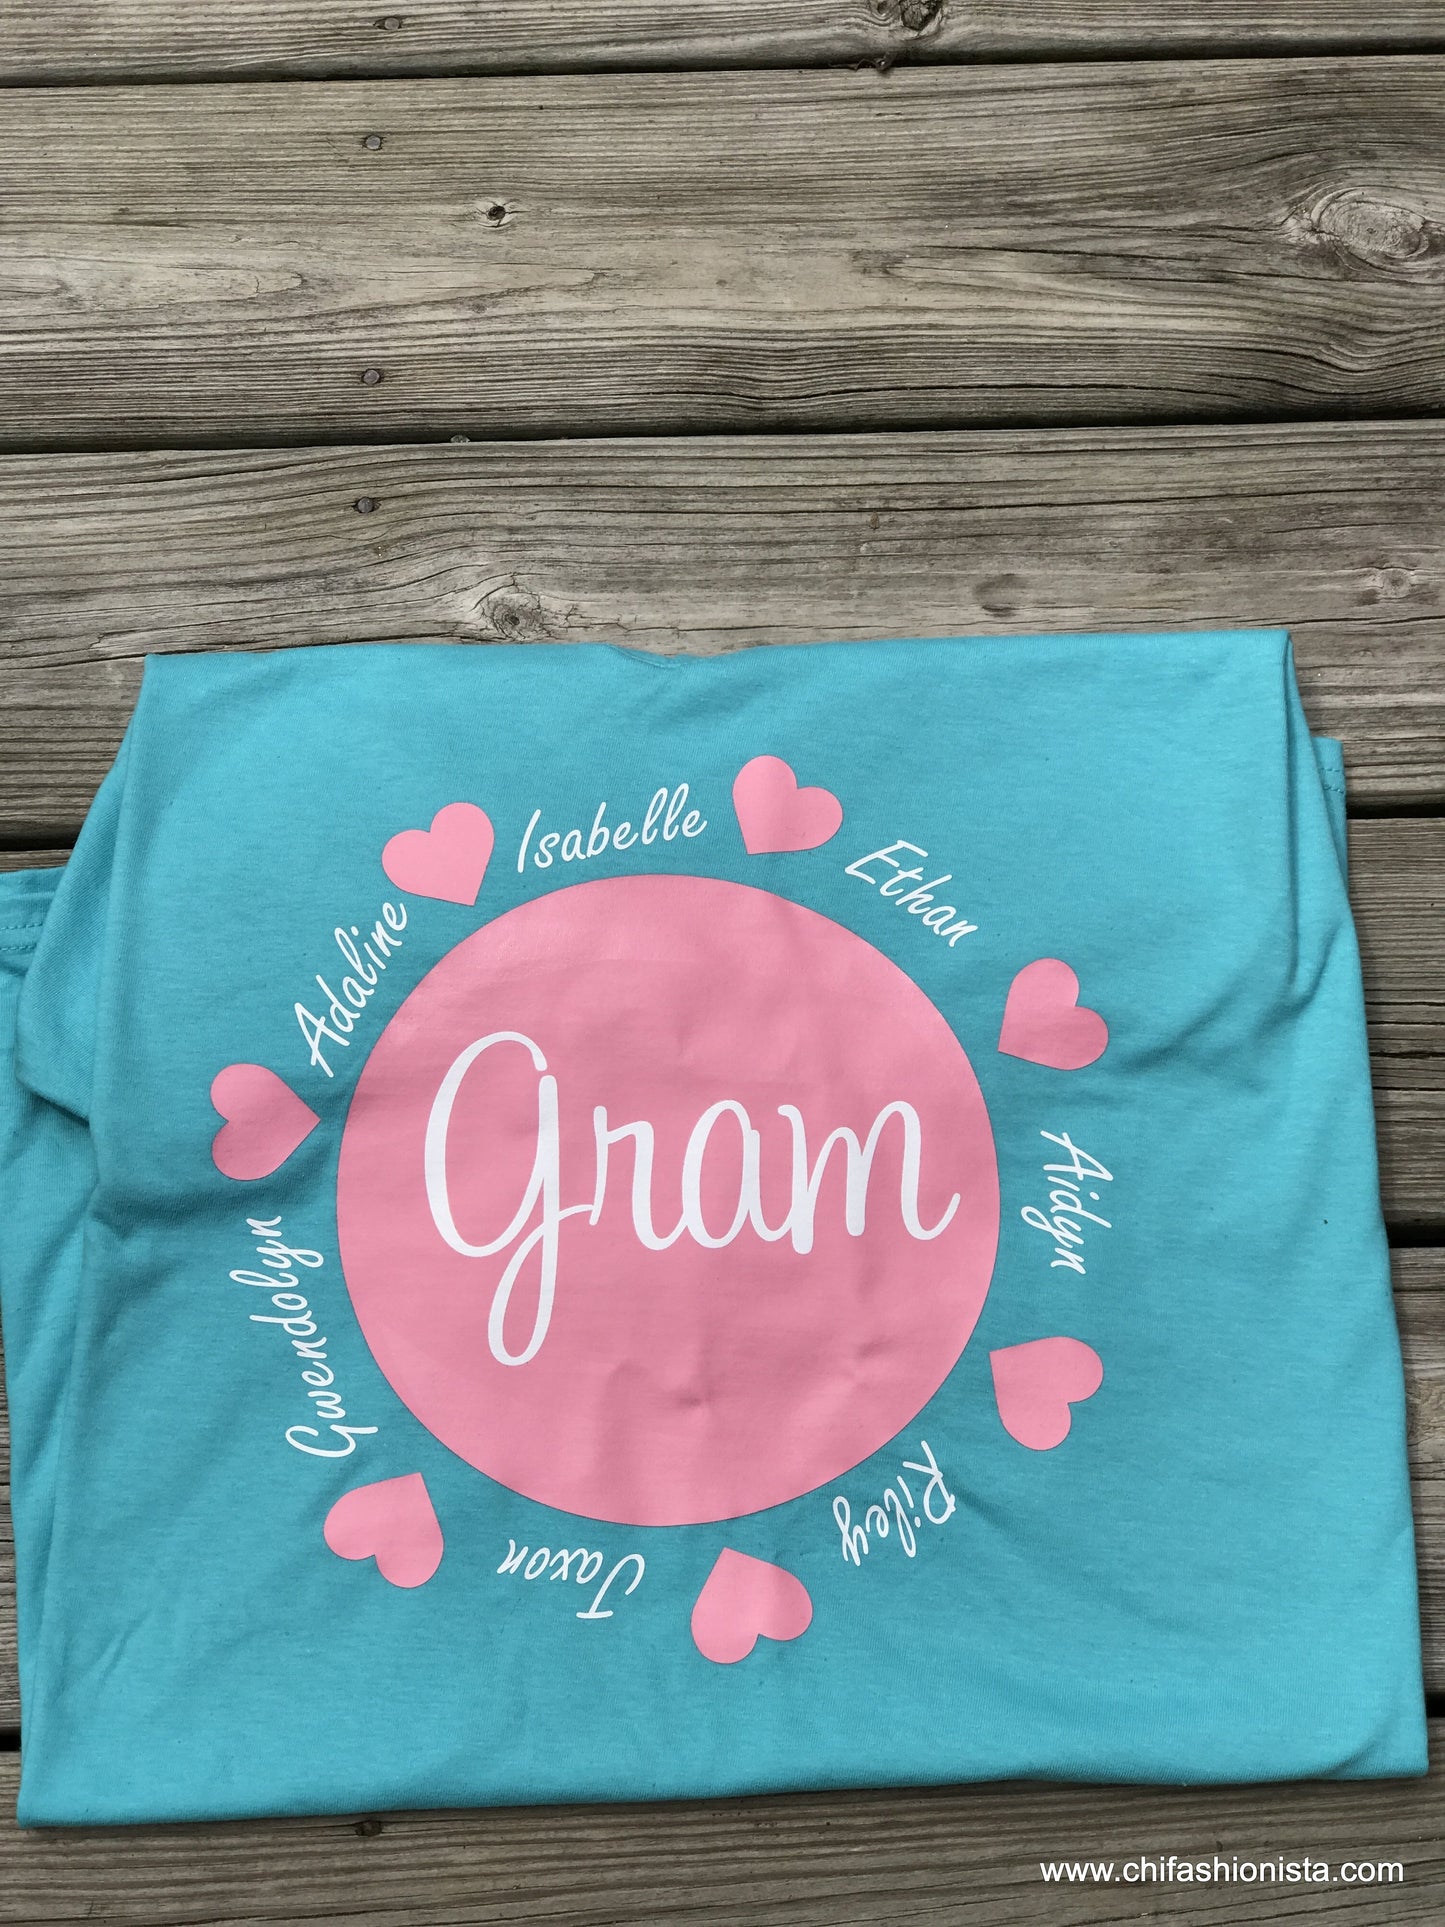 Gram with Grandchildren's names